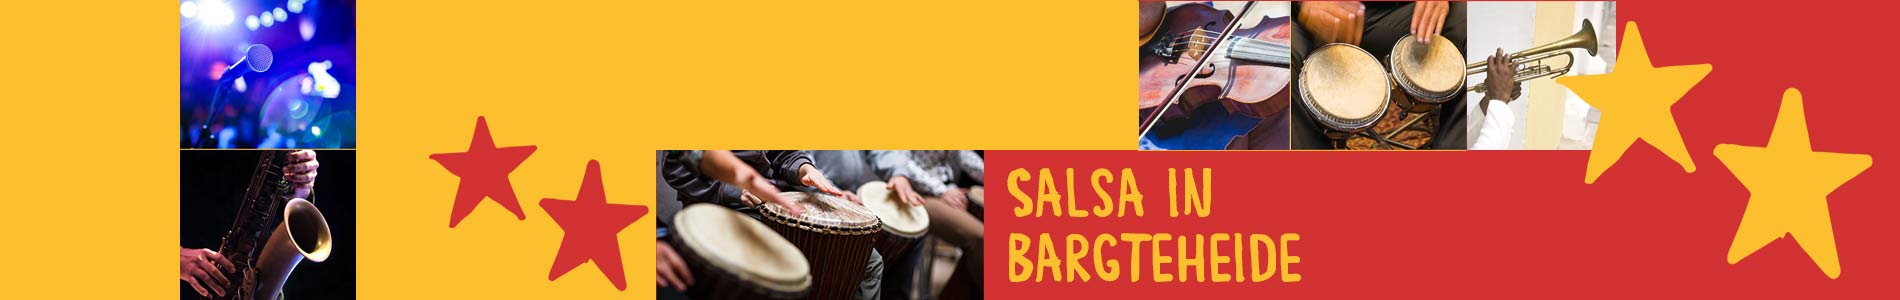 Salsa in Bargteheide – Salsa lernen und tanzen, Tanzkurse, Partys, Veranstaltungen